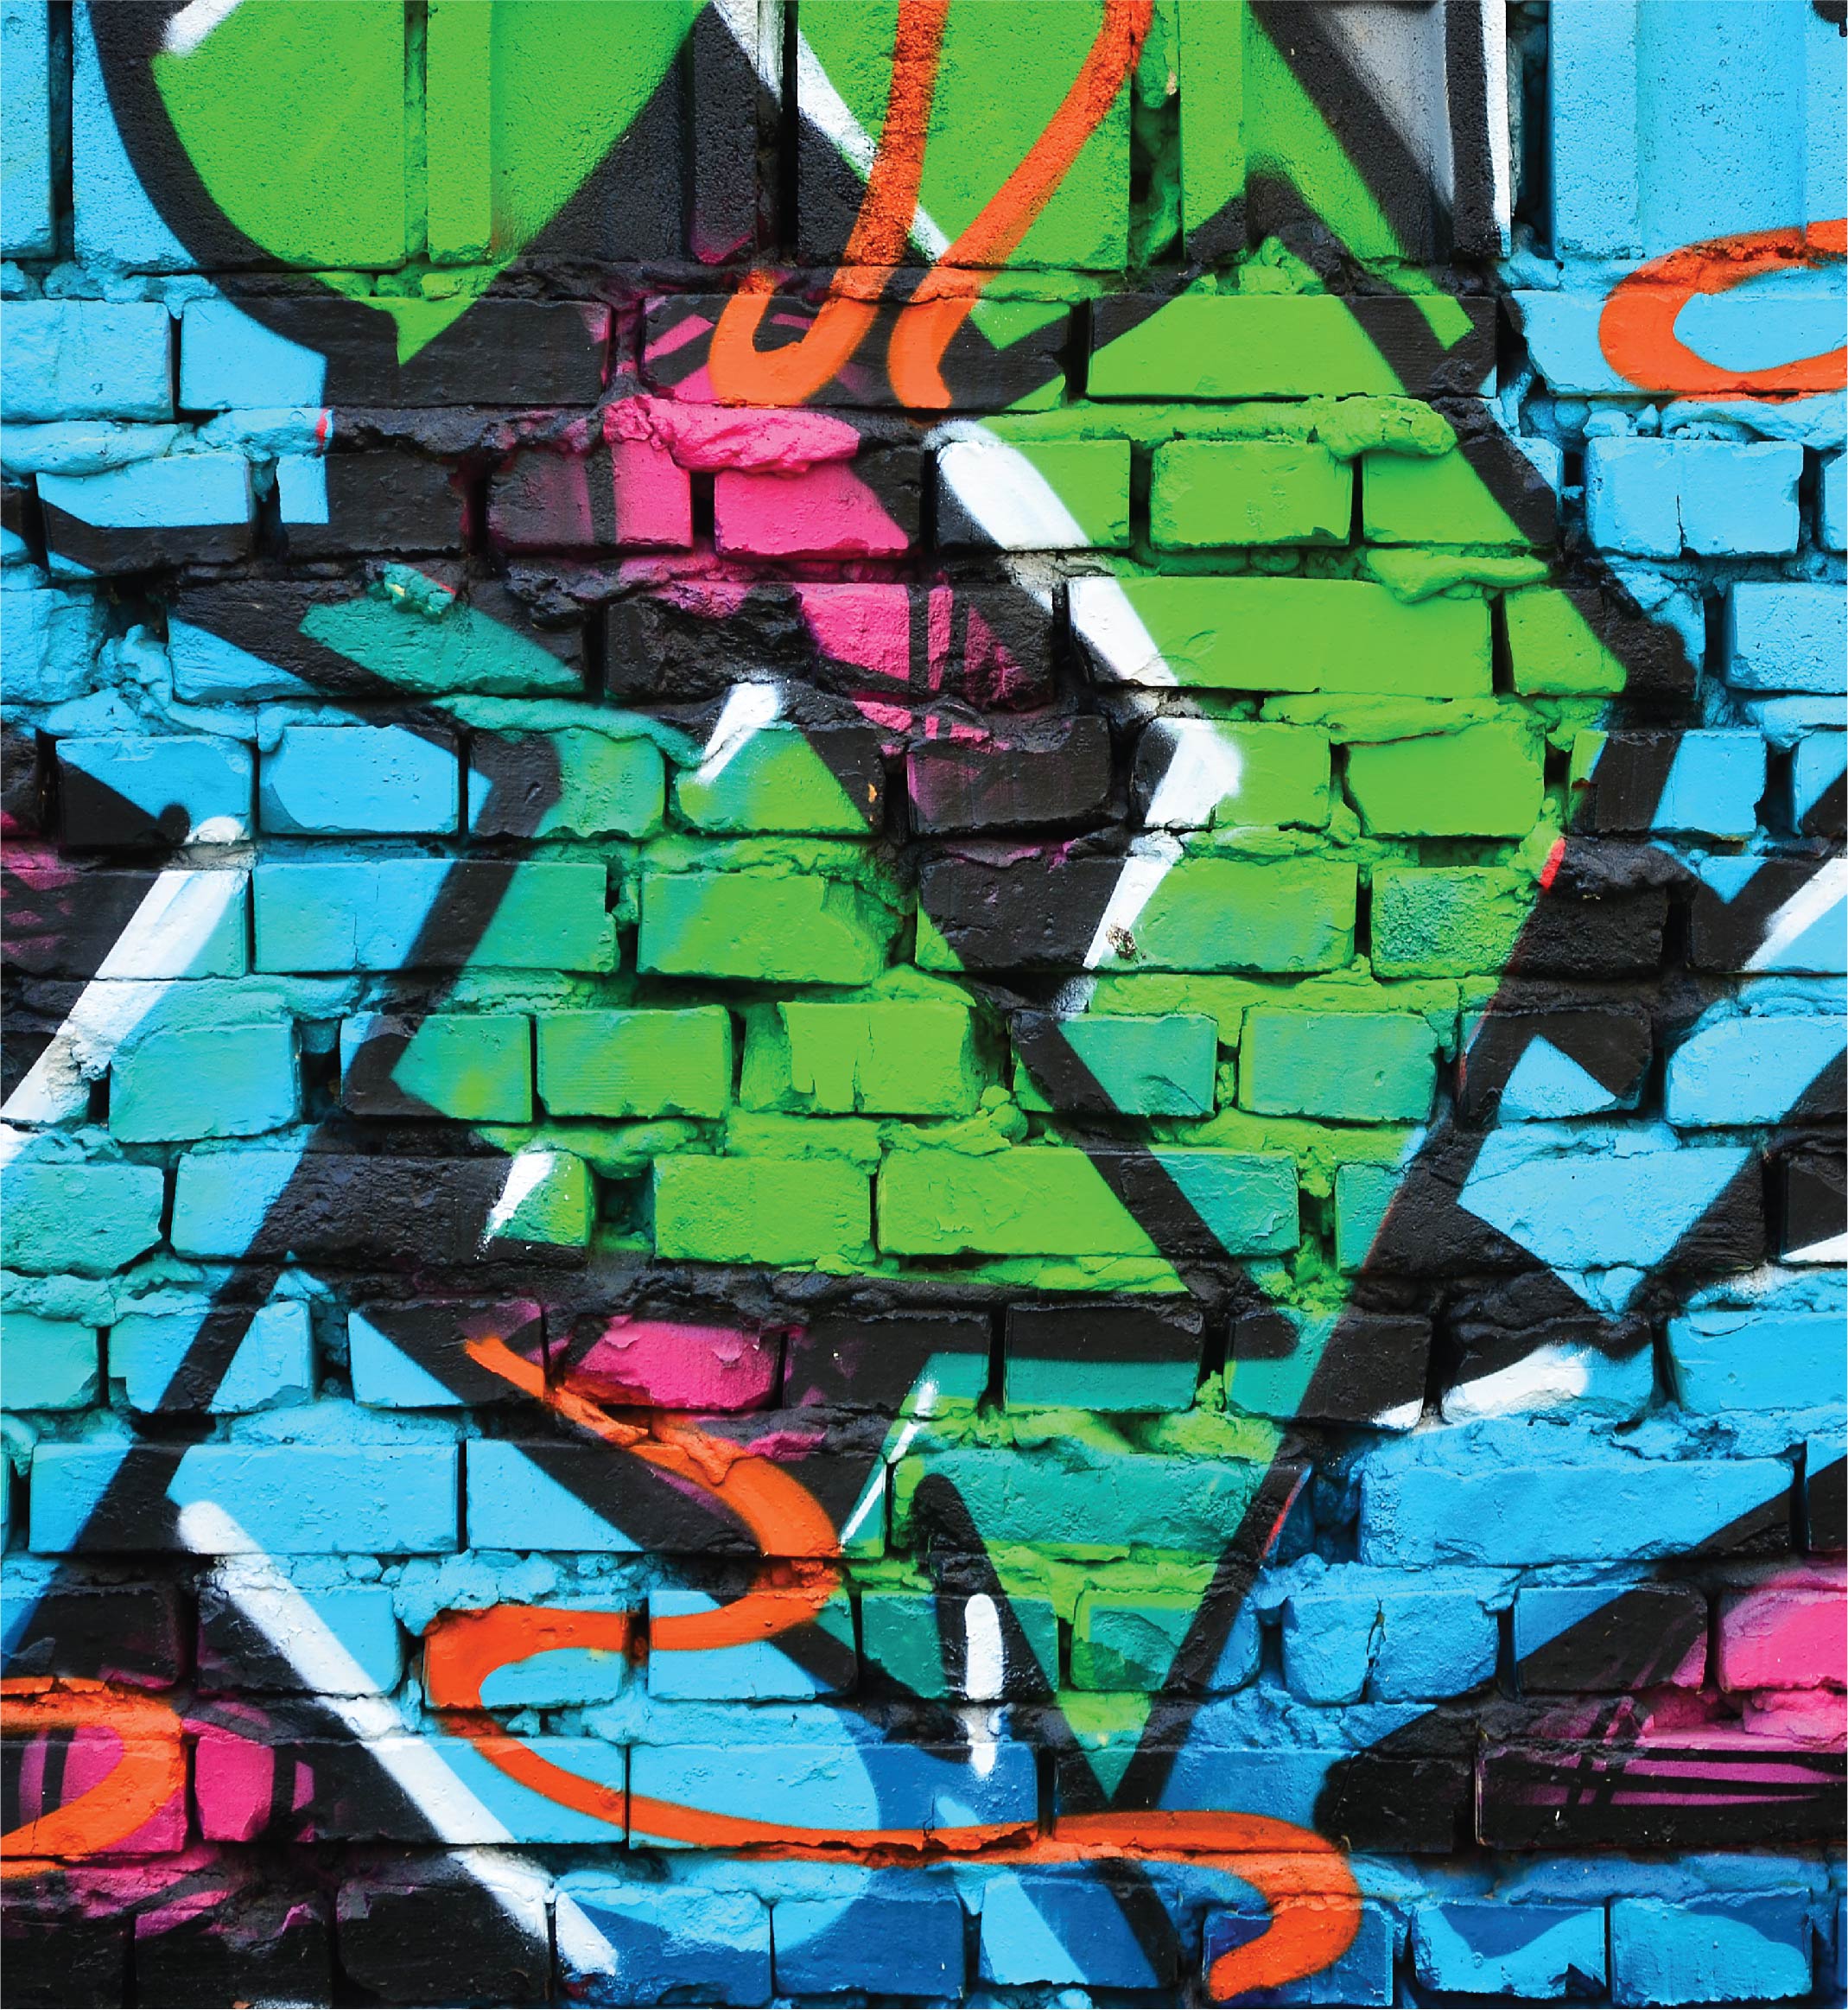 Graffiti Wall - Background